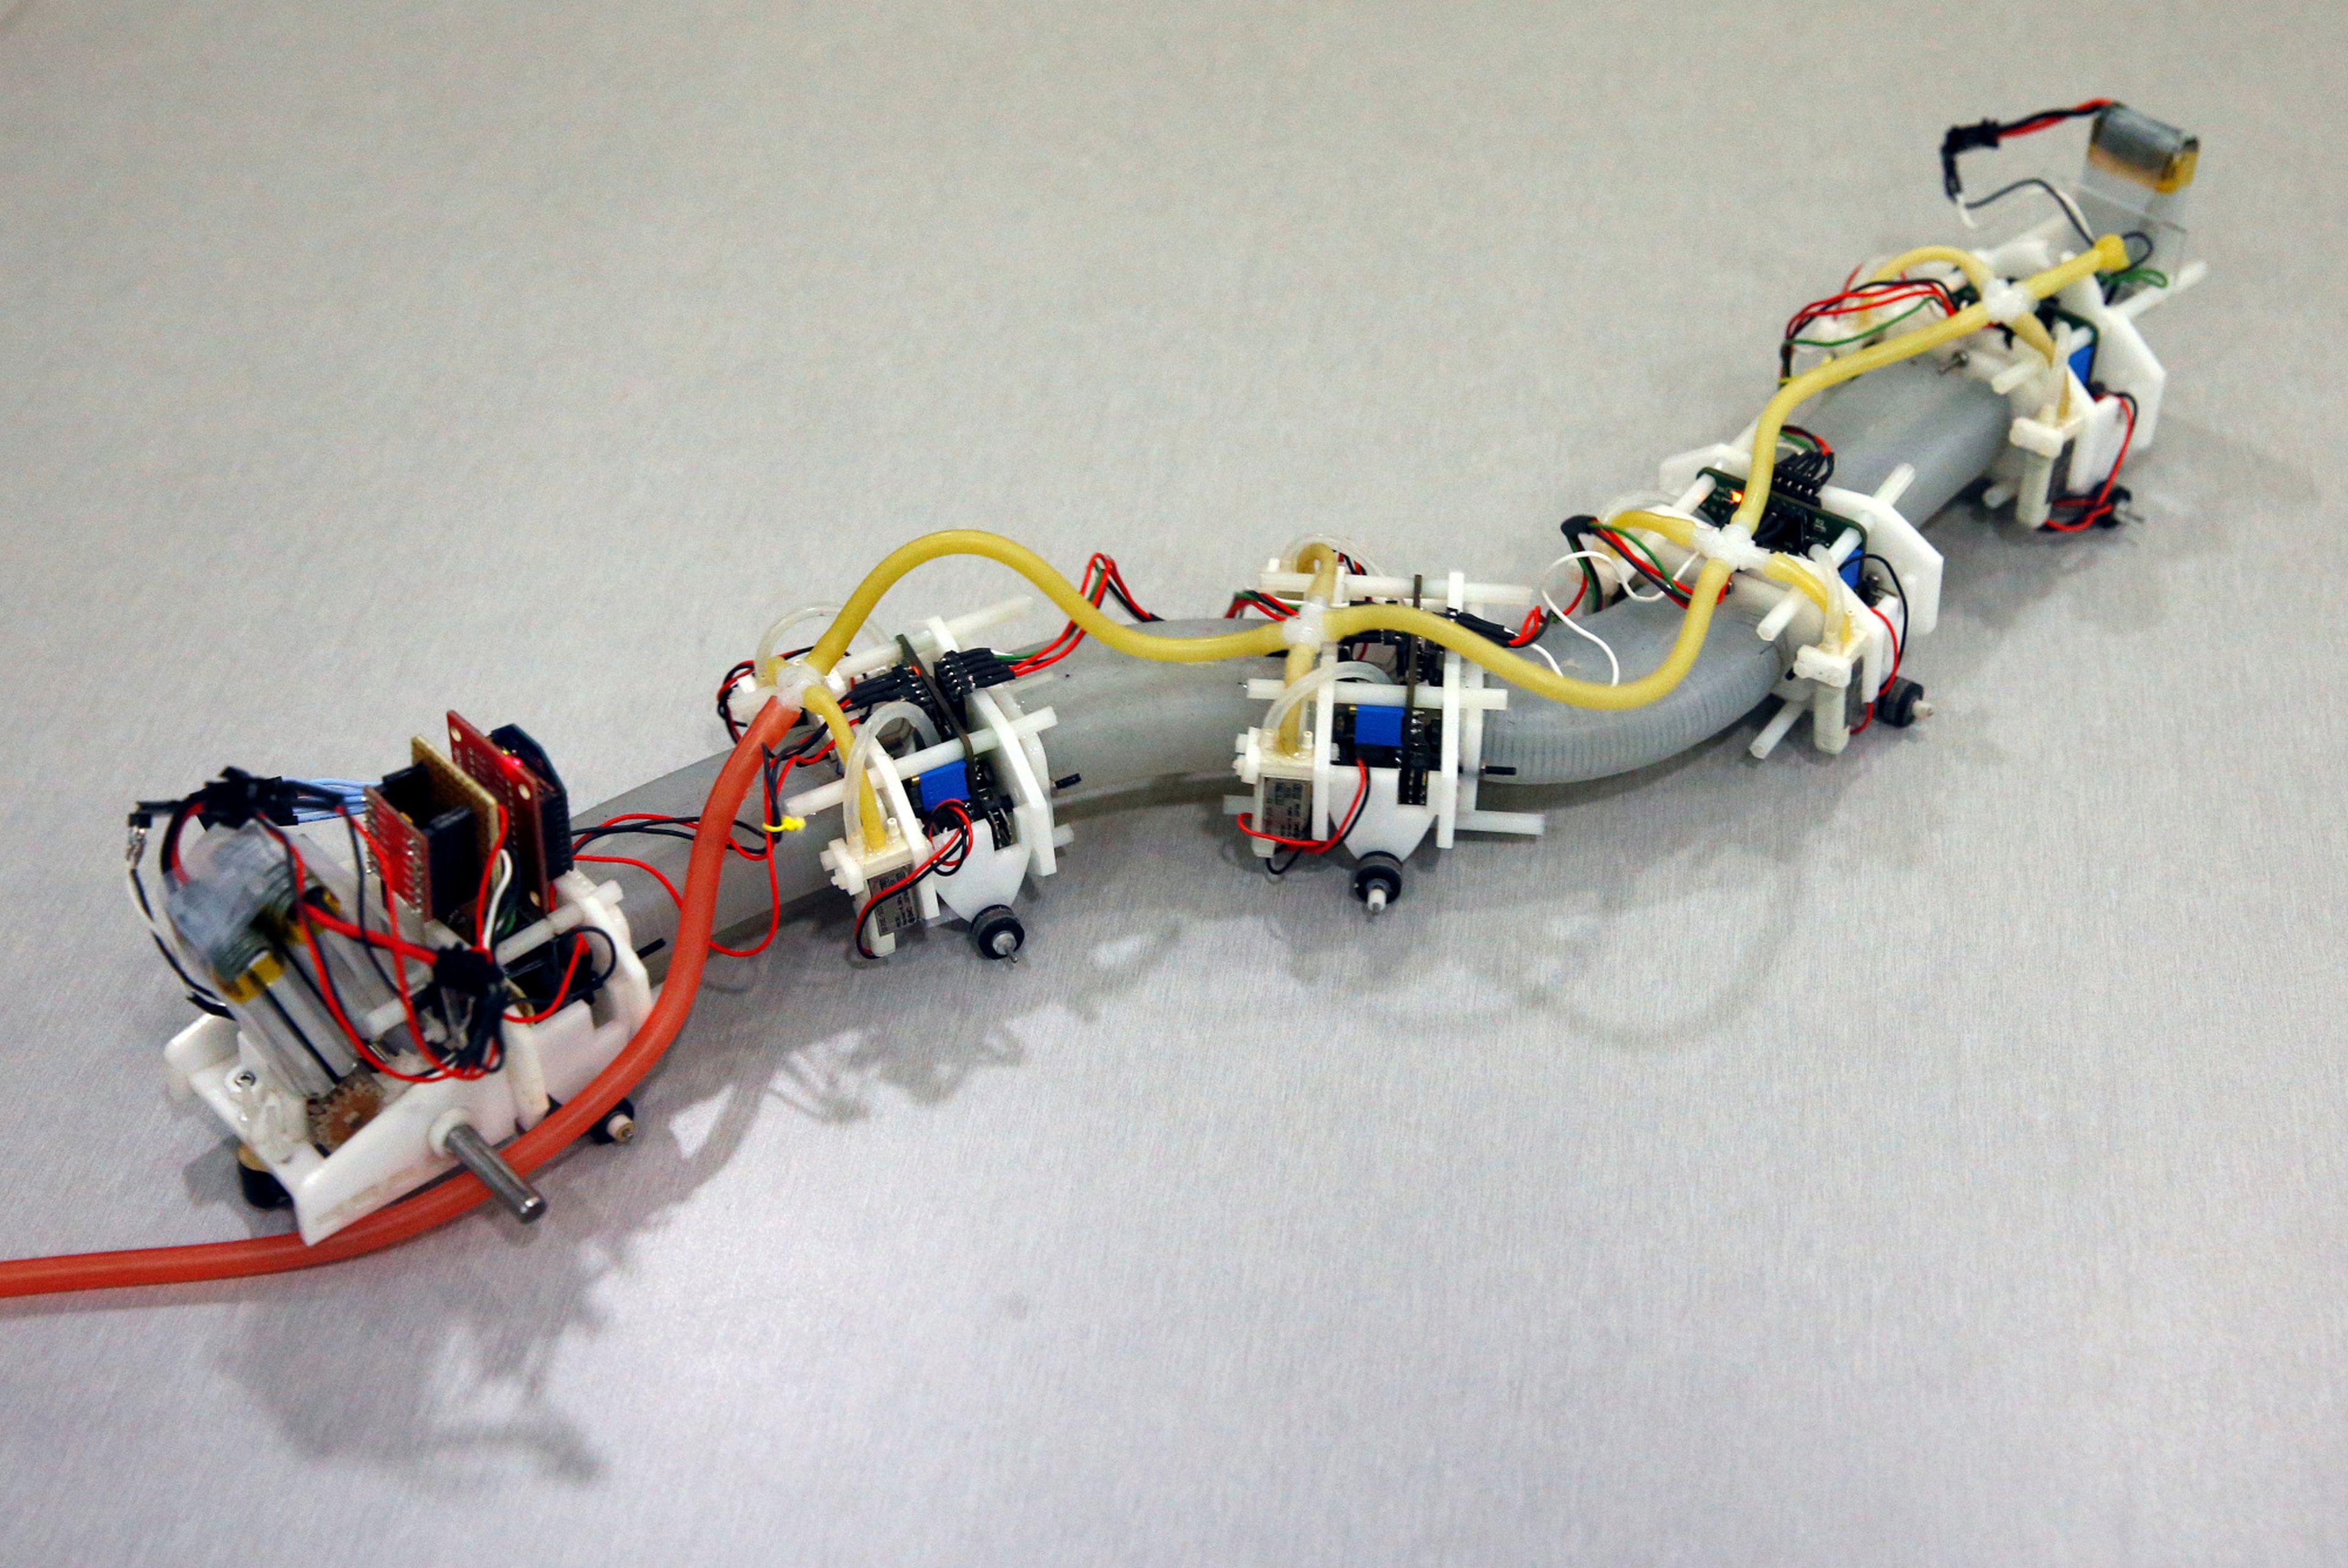 Un robot blando diseñado por un equipo del Instituto Politécnico de Worcester en los EE. UU., en forma de salamandra, se exhibe en Singapur el 5 de junio de 2017.